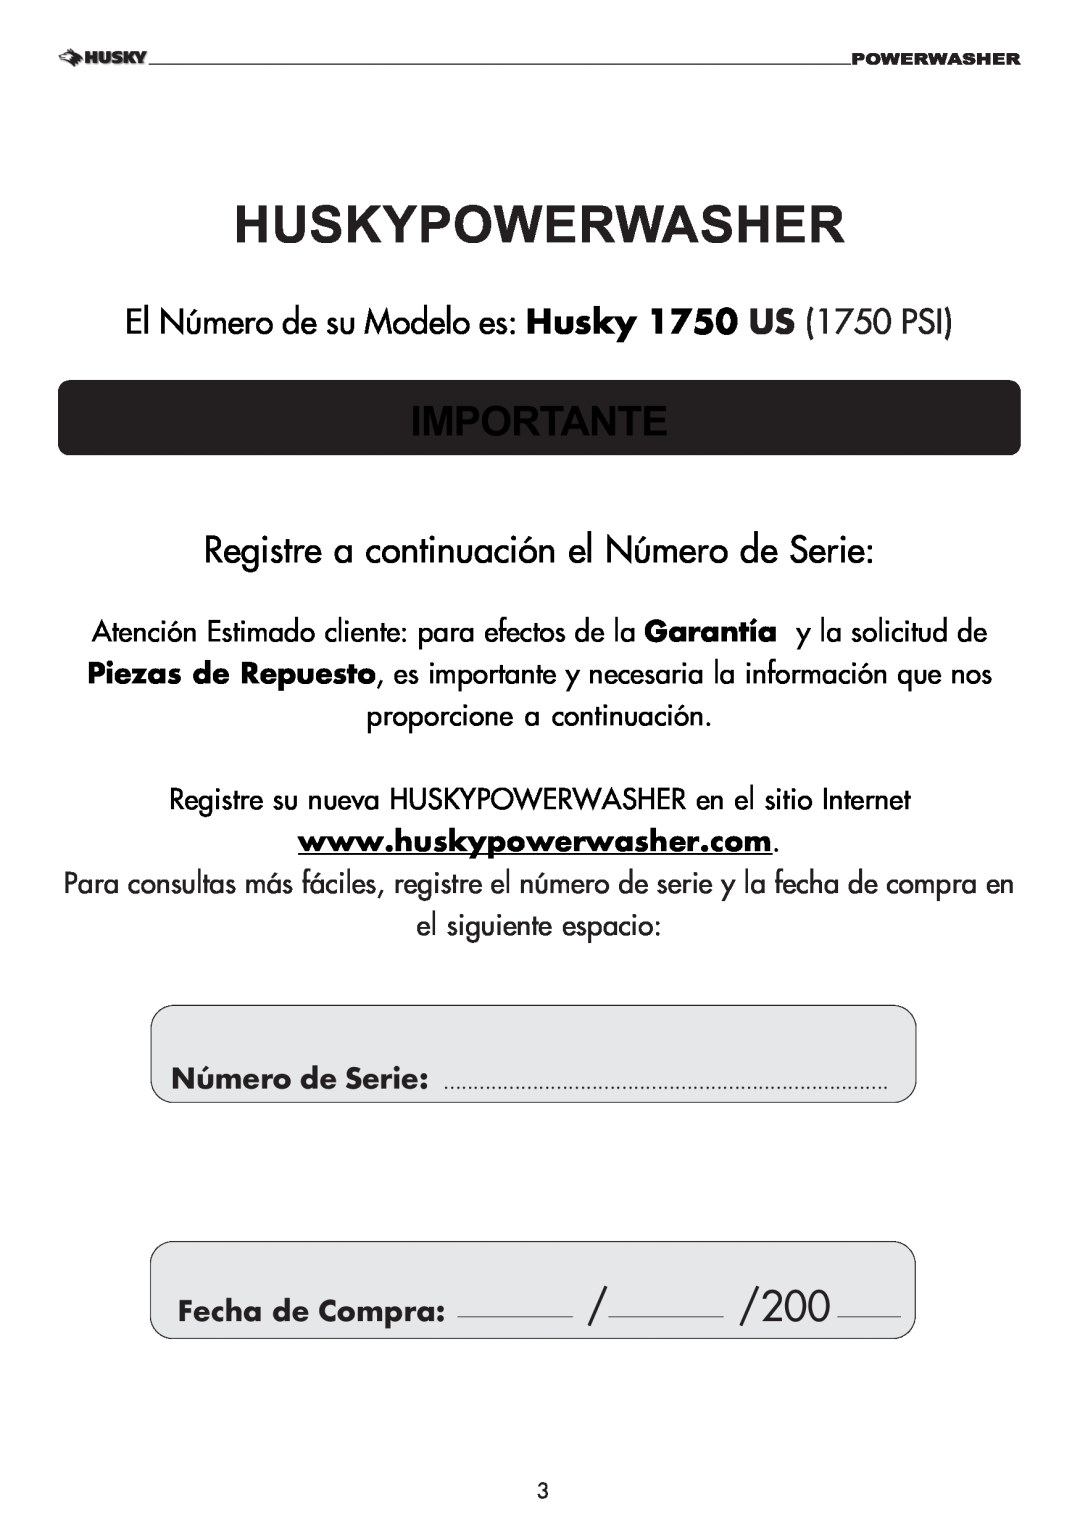 Husky 1750 US manual Huskypowerwasher, Importante, Registre a continuación el Número de Serie 